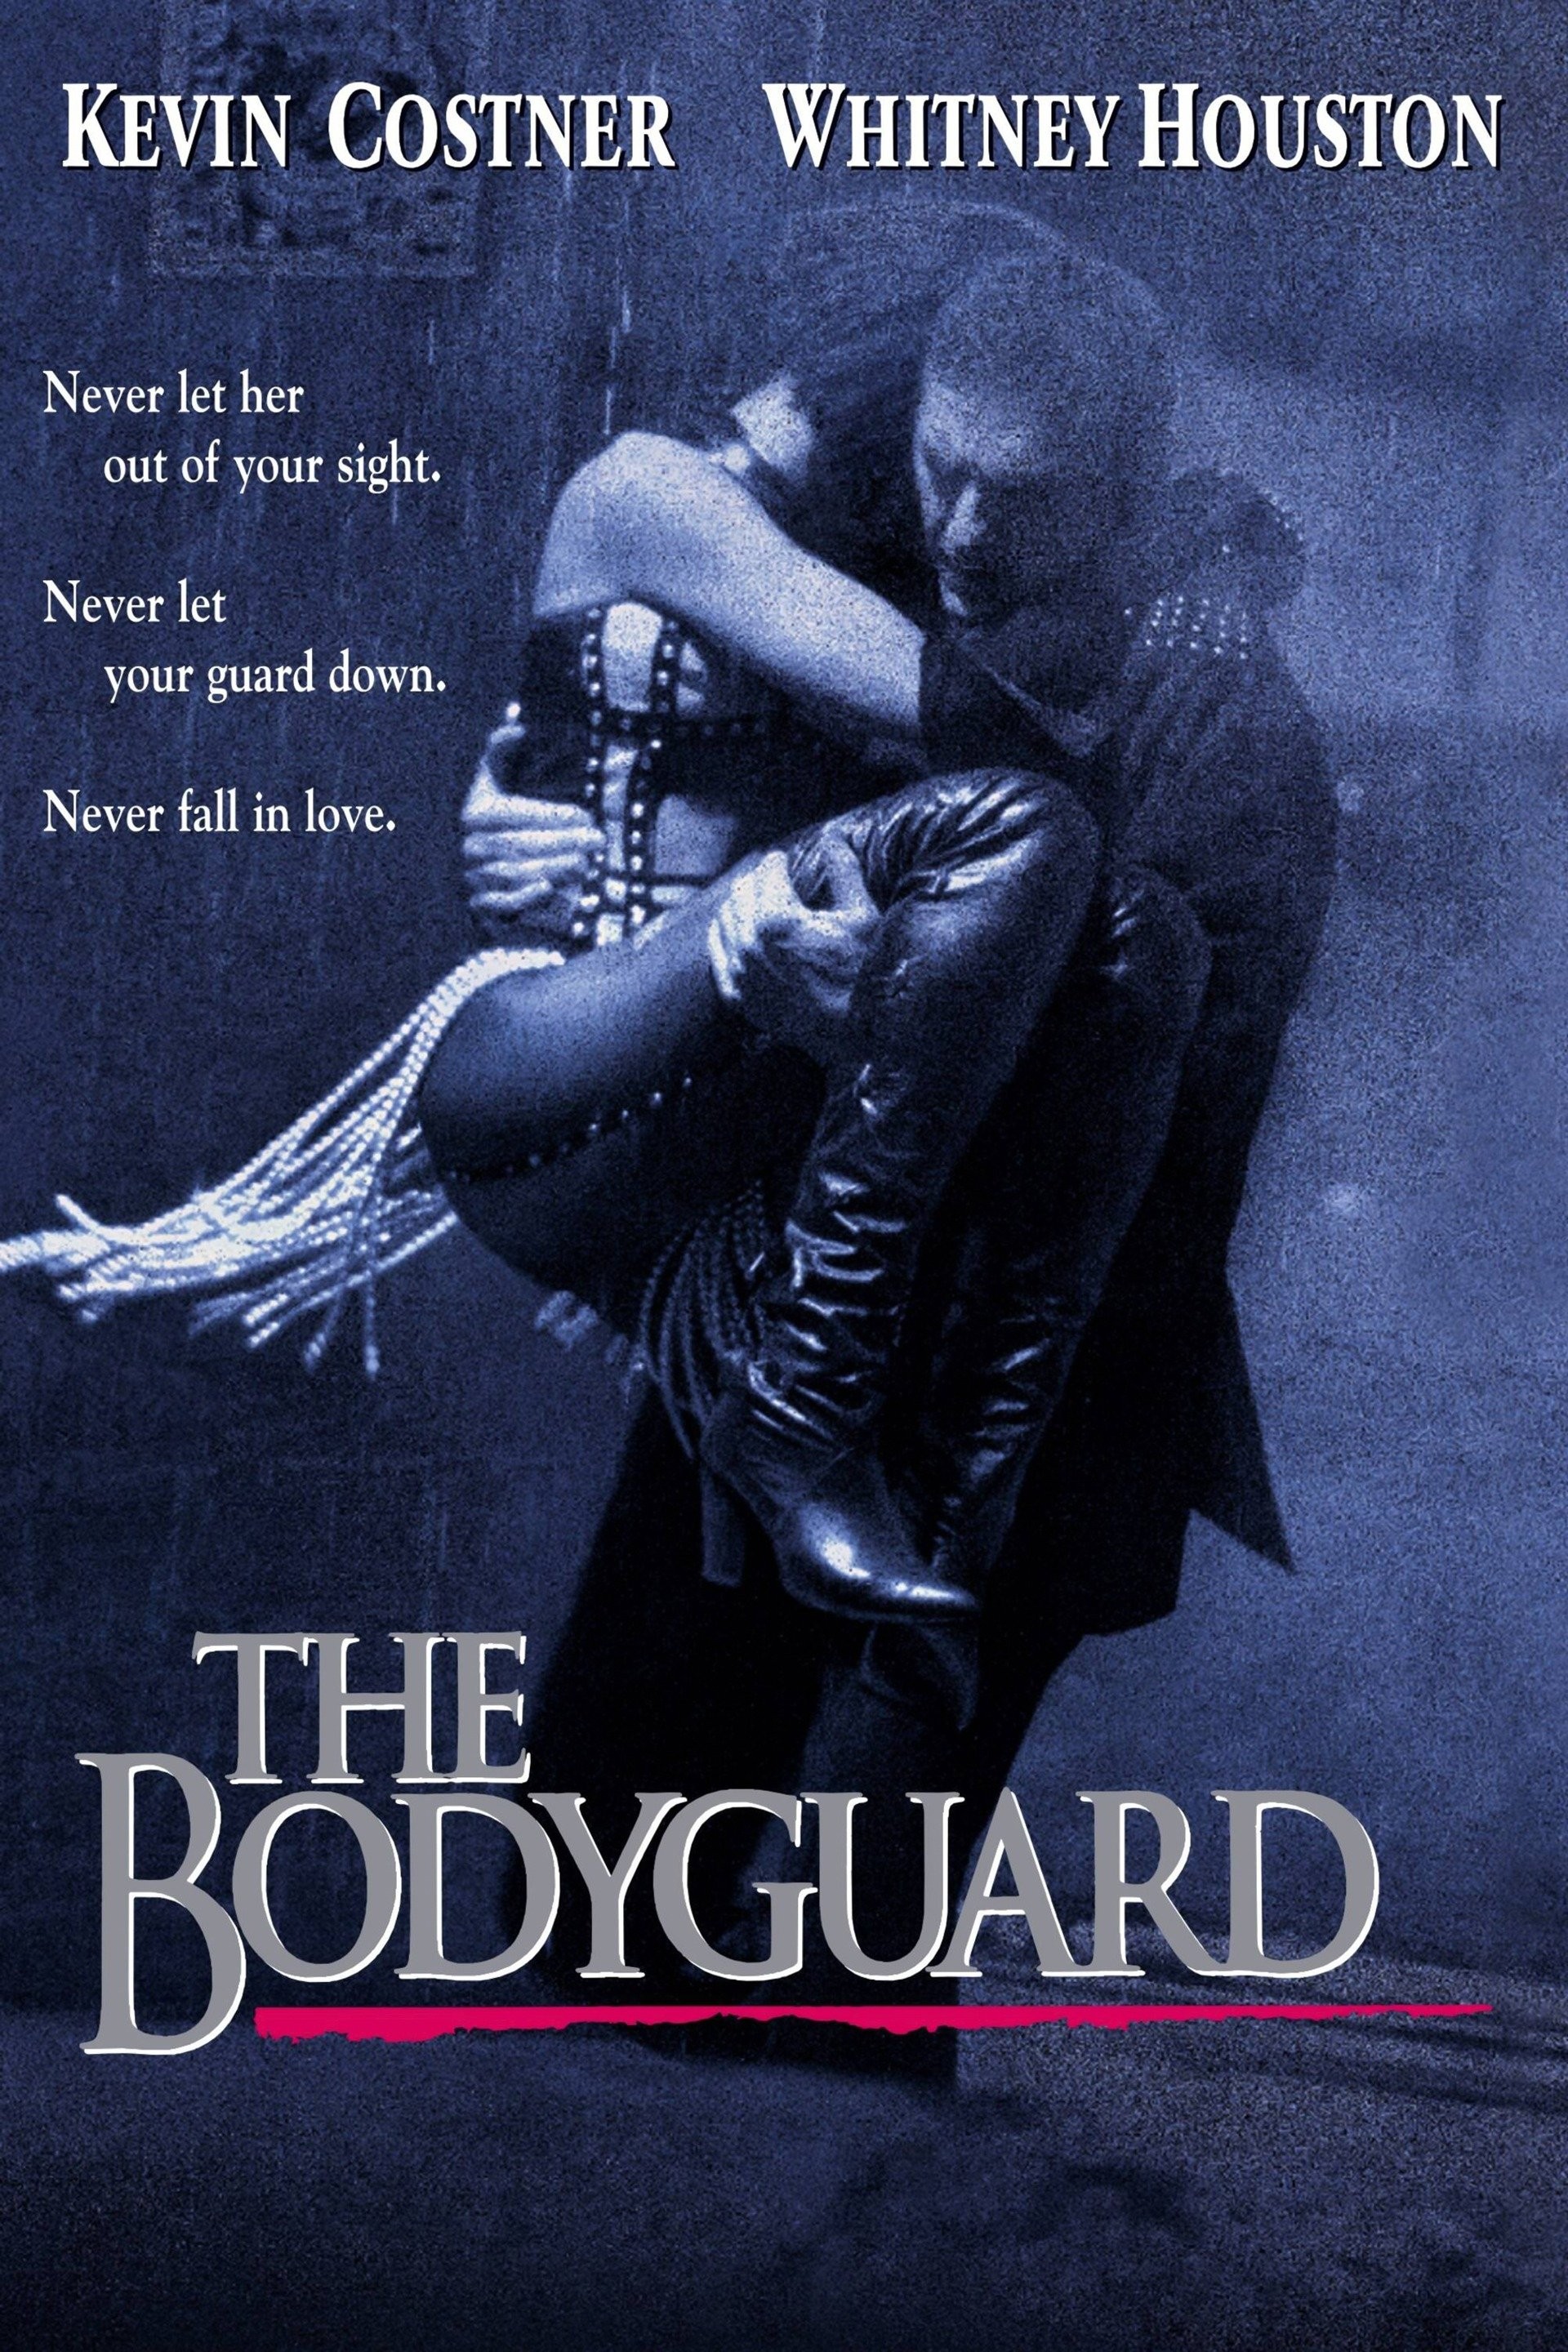 The Bodyguard, Frank Protects Rachel